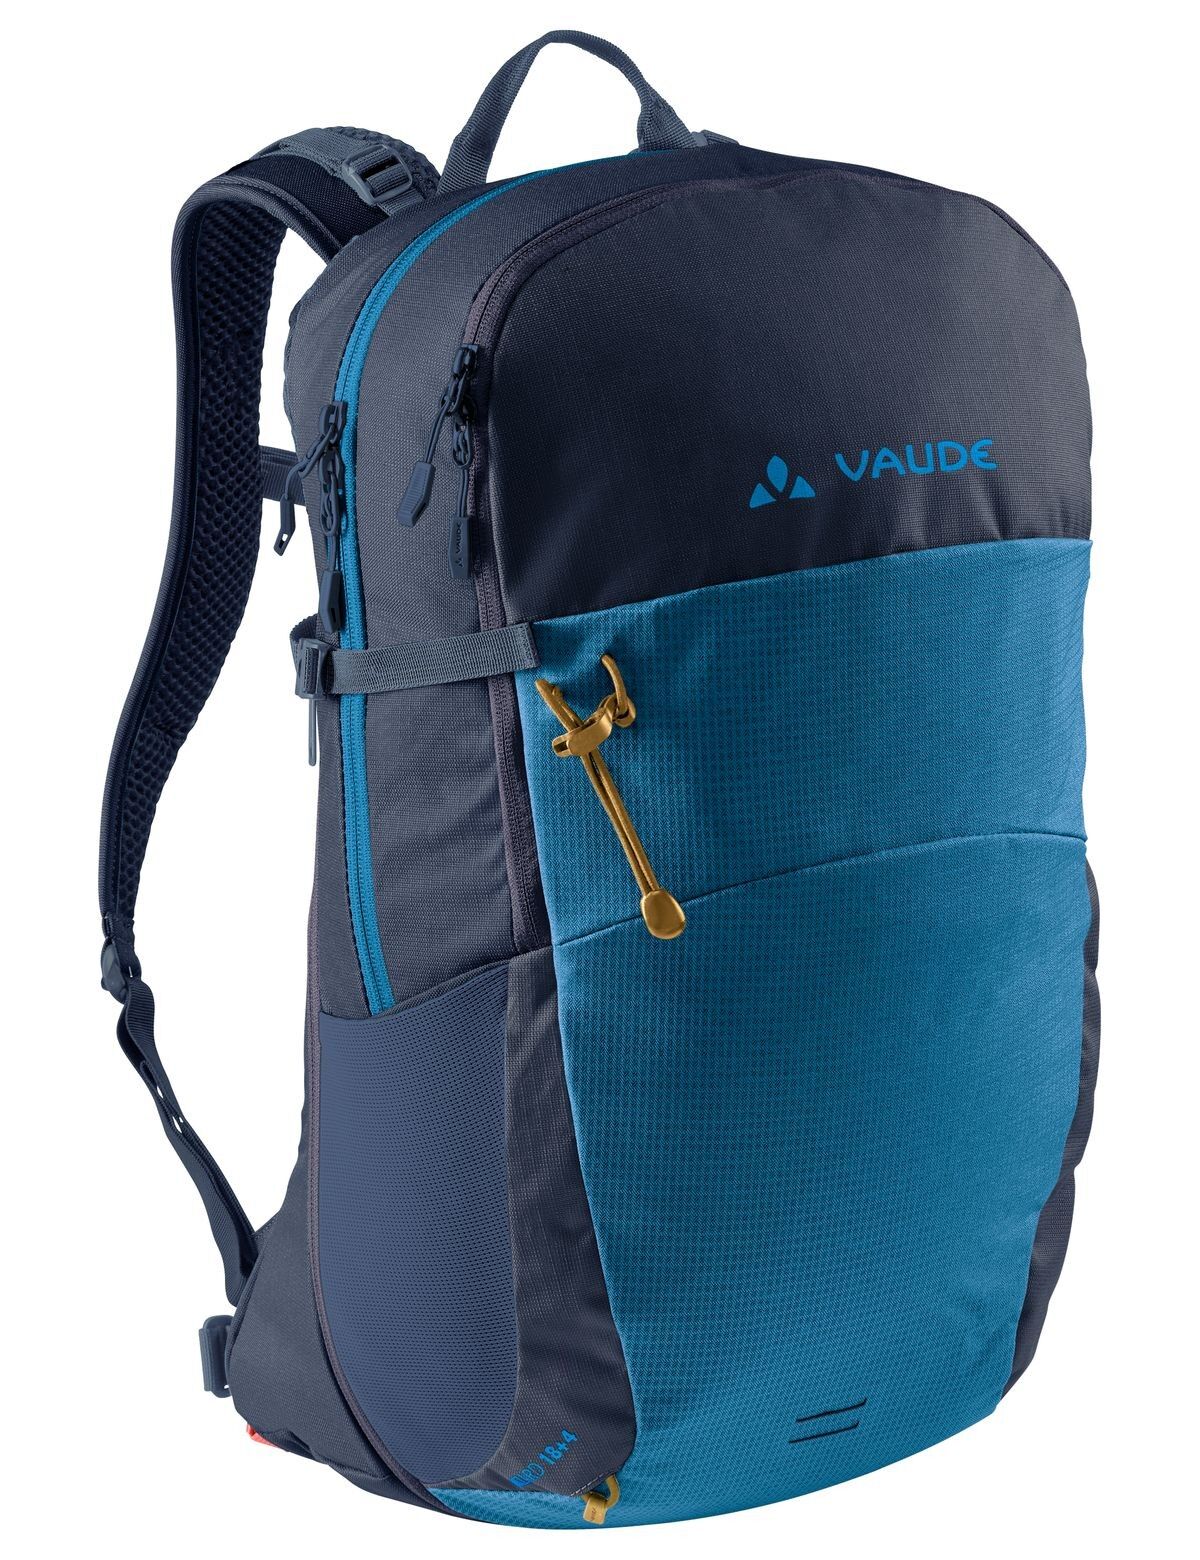 Vaude Wizard 18+4 - Walking backpack